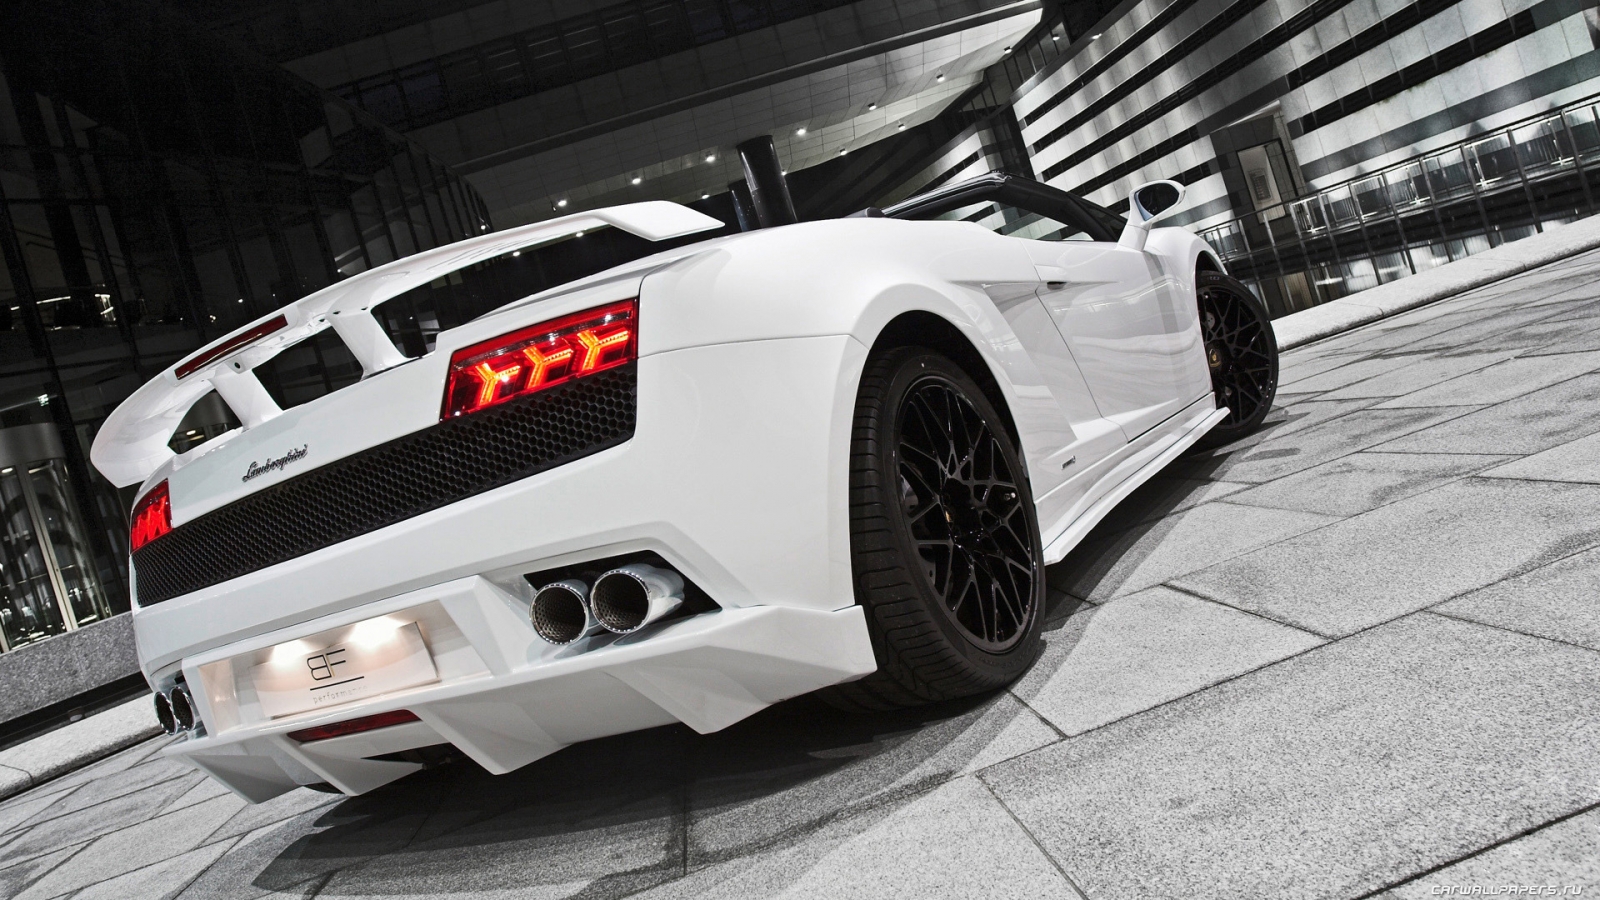 White Lamborghini Coupe for 1600 x 900 HDTV resolution